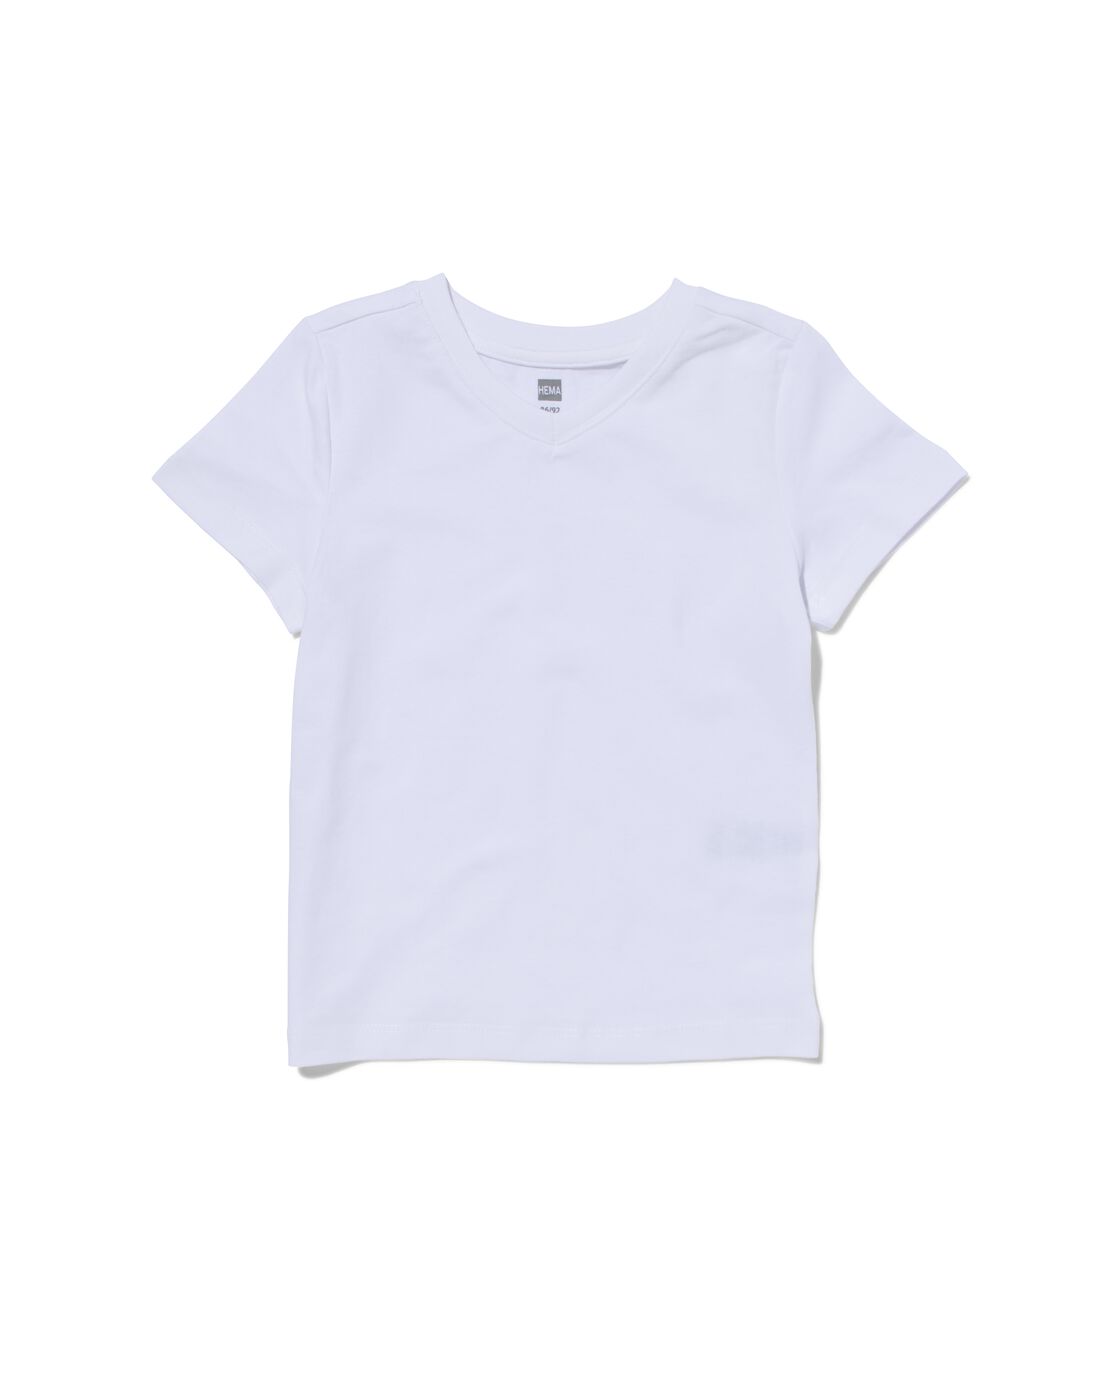 HEMA Kinder T-shirts Biologisch Katoen 2 Stuks Wit (wit)